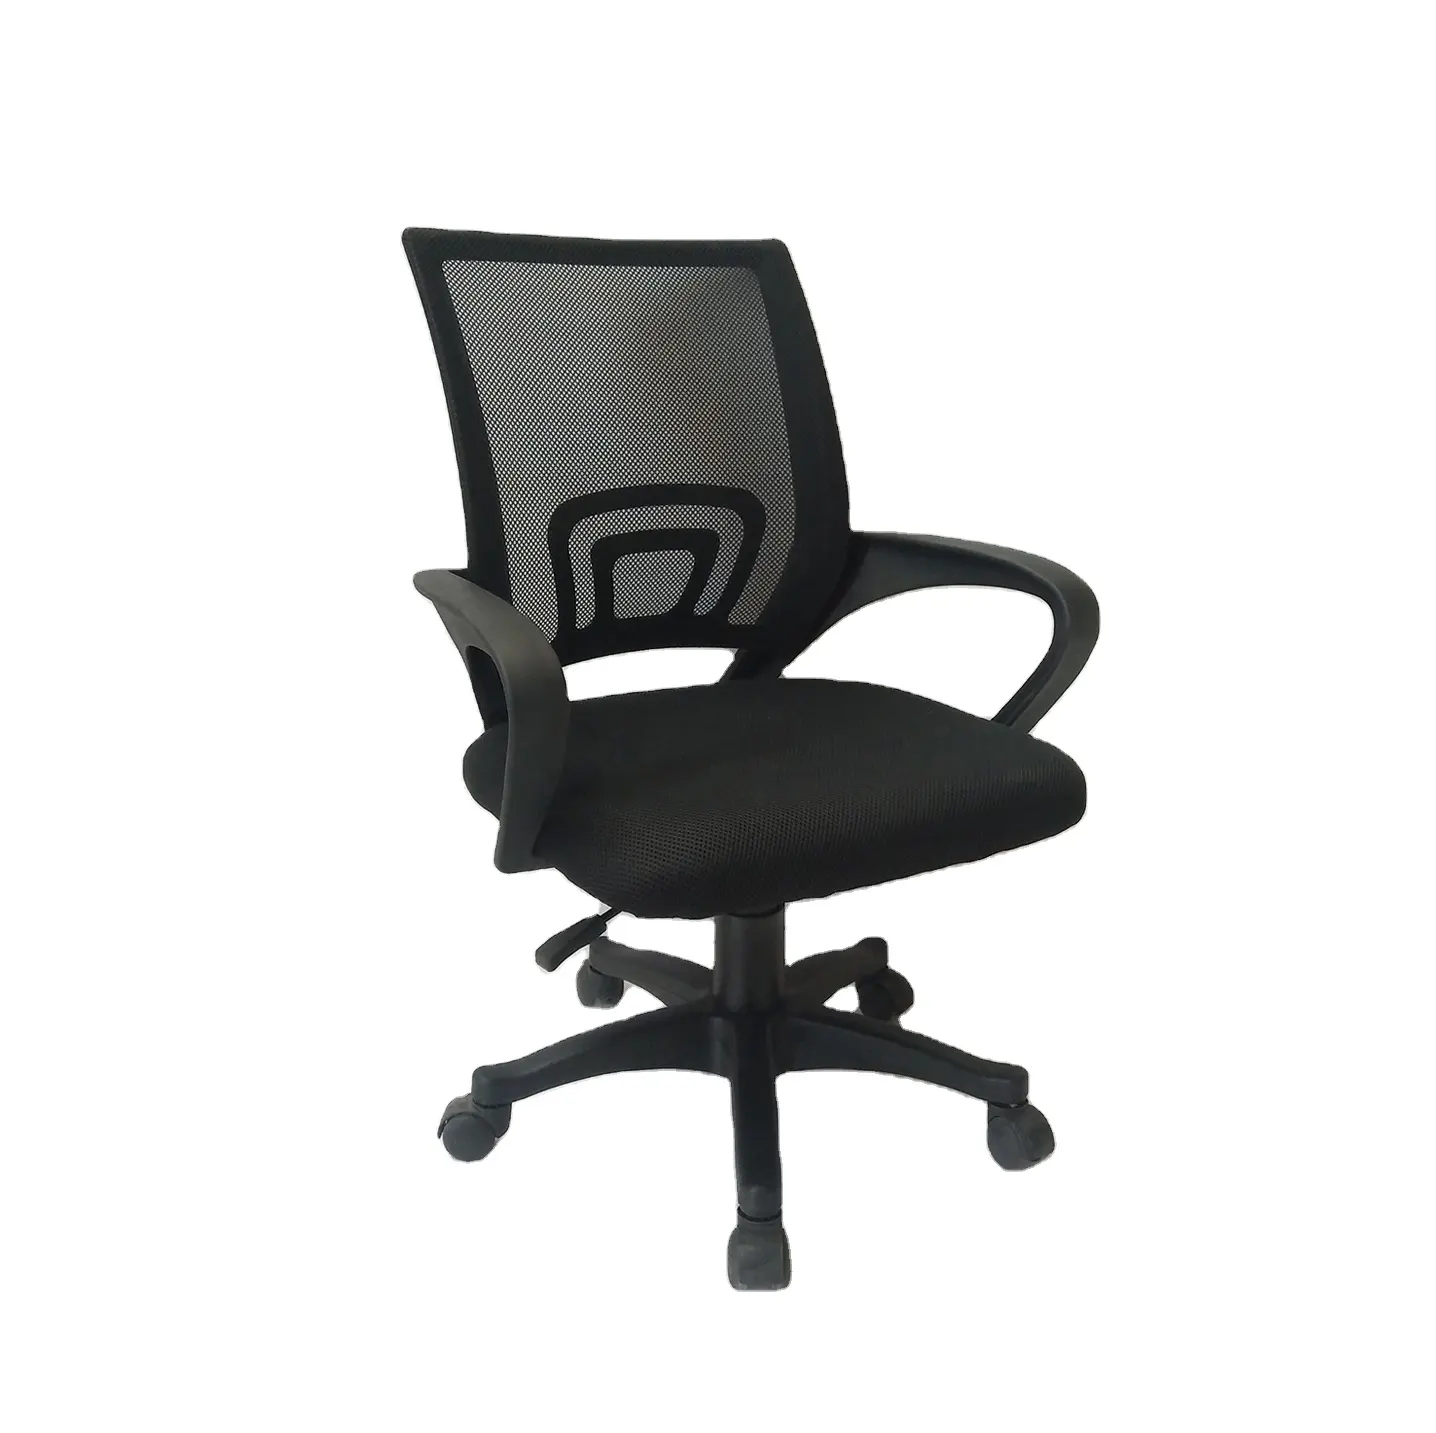 Chaise de bureau pivotante à maille ergonomique noire, meuble Commercial de haute qualité, pivotante, pour ordinateur